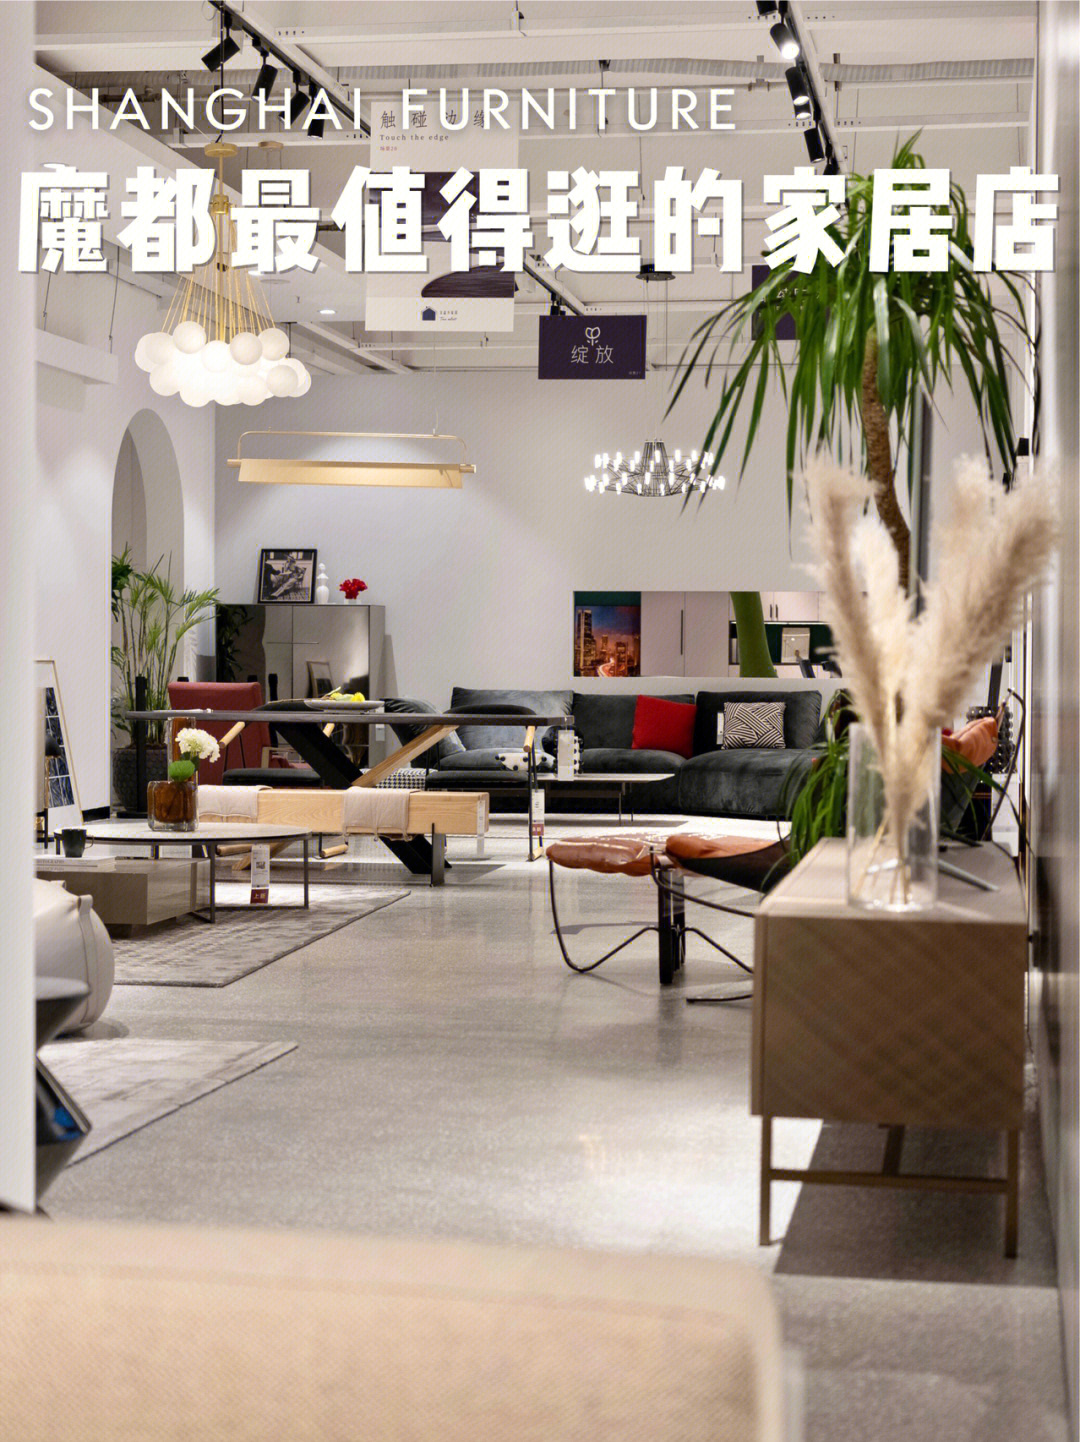 上海教科书级软装家居馆刷新家具榜单